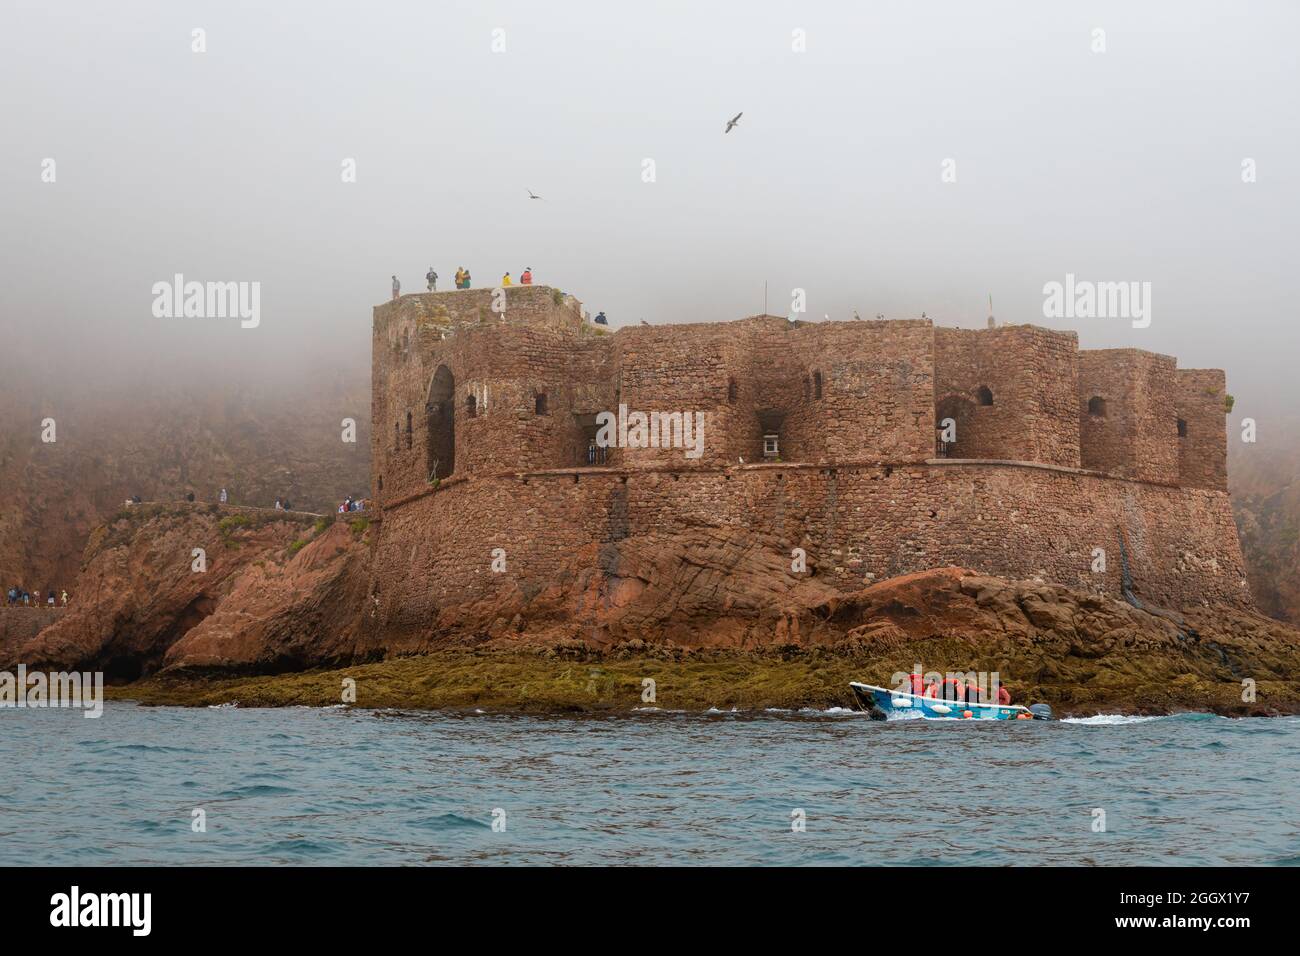 Fort de Saint-Jean-Baptiste sur l'île de Berlenga Grande, la plus grande île de l'archipel de Berlengas, au large de la côte de Peniche, Portugal. Banque D'Images